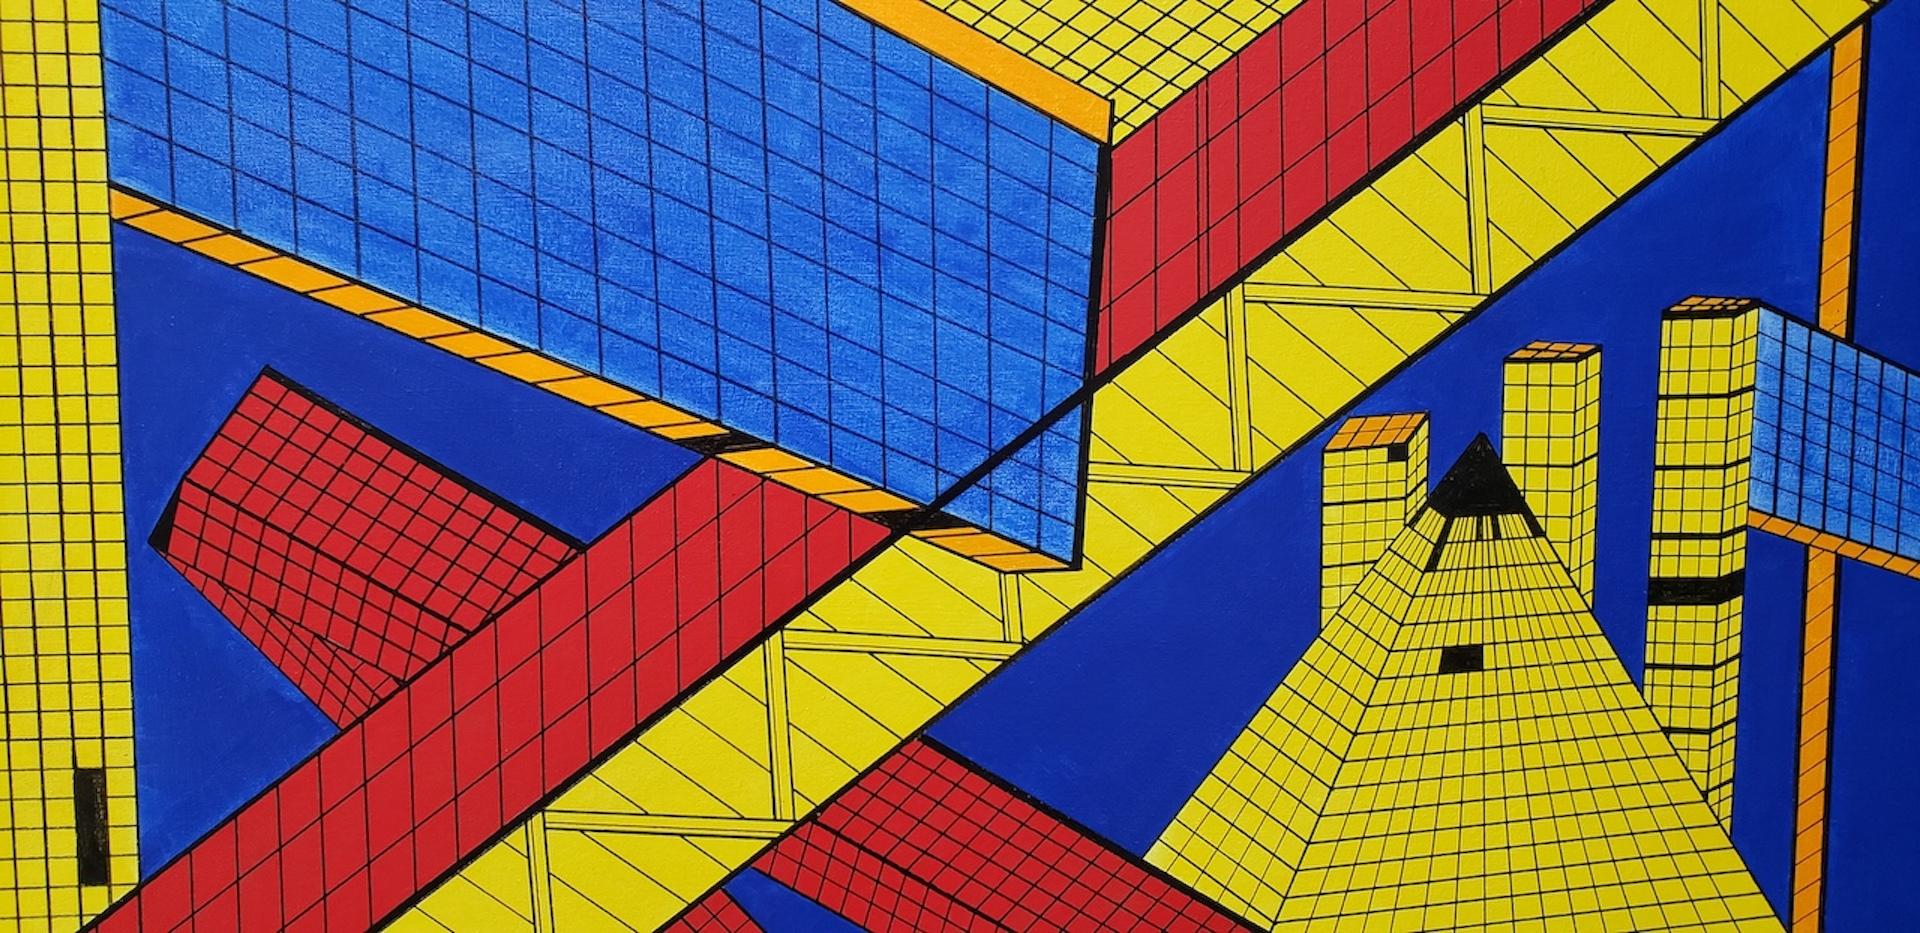 Peinture abstraite géométrique à grande échelle de Dee Brown

Fantastique acrylique originale sur toile de Dee Brown.

Le tableau est en bon état, avec quelques petites éraflures dues à l'âge.

Bien qu'elle ne soit pas datée, nous pensons